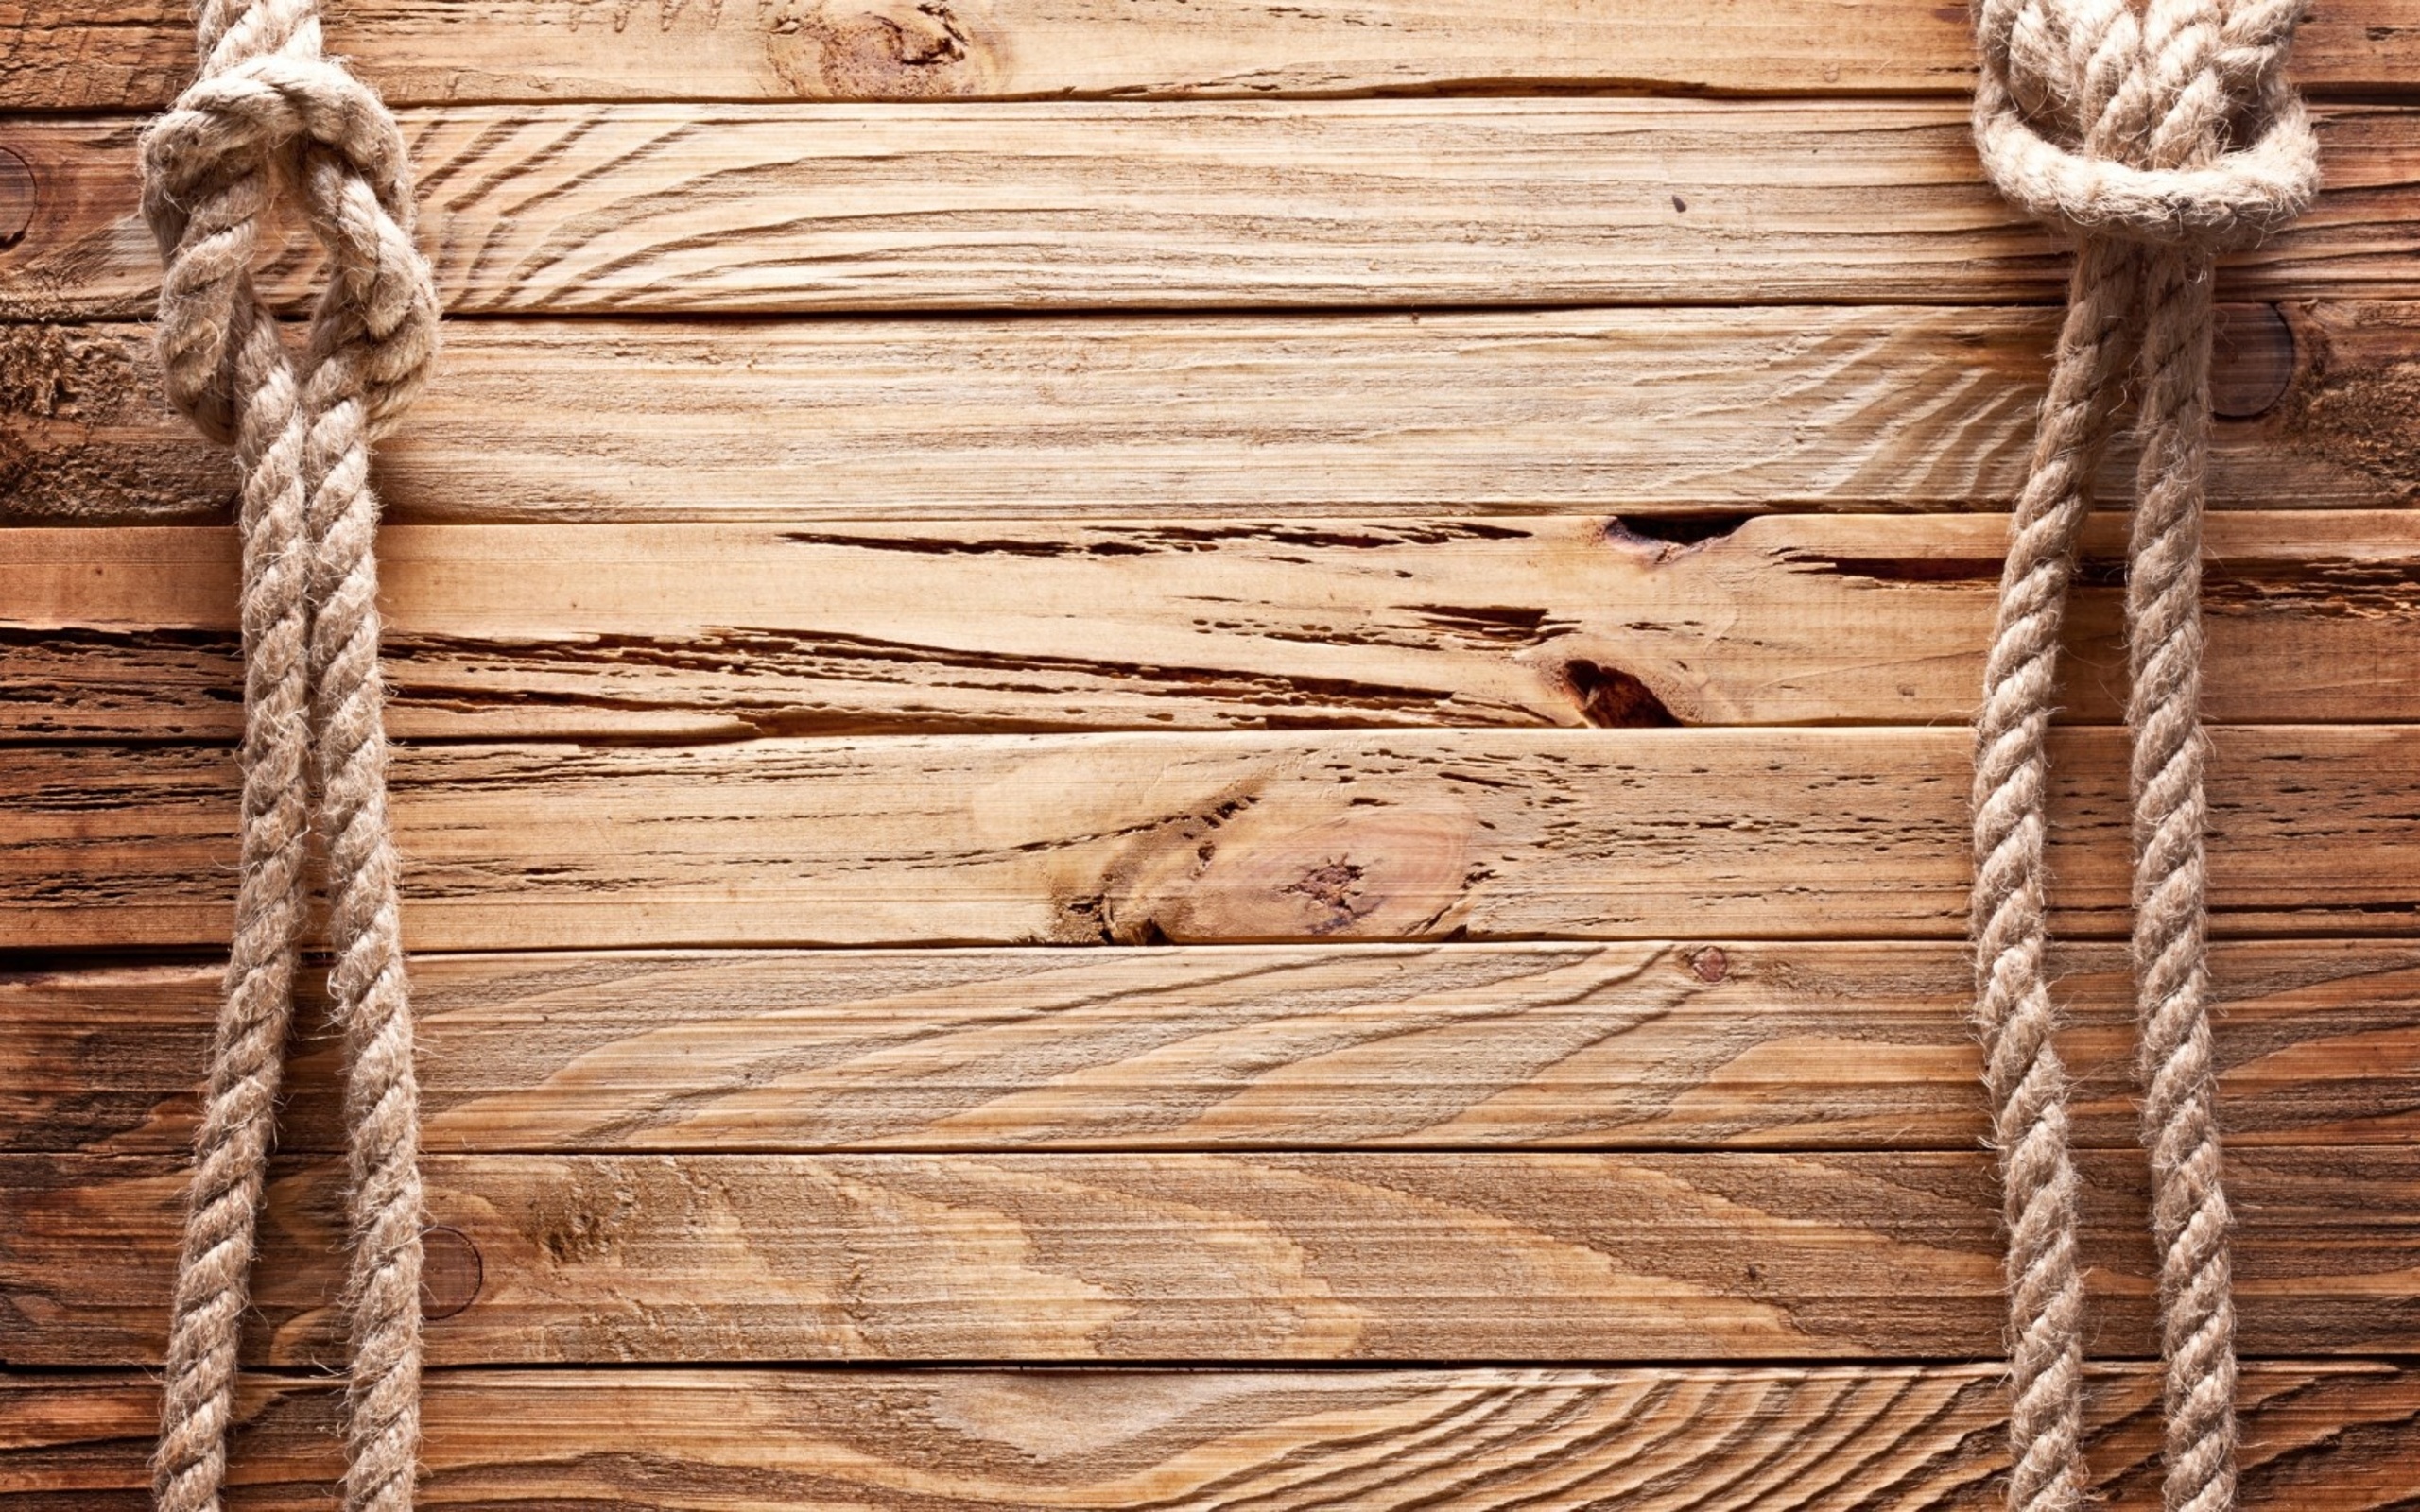 Với những textures gỗ đẹp này, bạn sẽ không thể rời mắt khỏi hình ảnh. Sự tỉ mỉ trong từng đường nét, màu sắc chân thật sẽ khiến cho bất kì ai đều muốn thưởng thức. Hãy cùng khám phá những họa tiết gỗ độc đáo và đẹp mắt này!